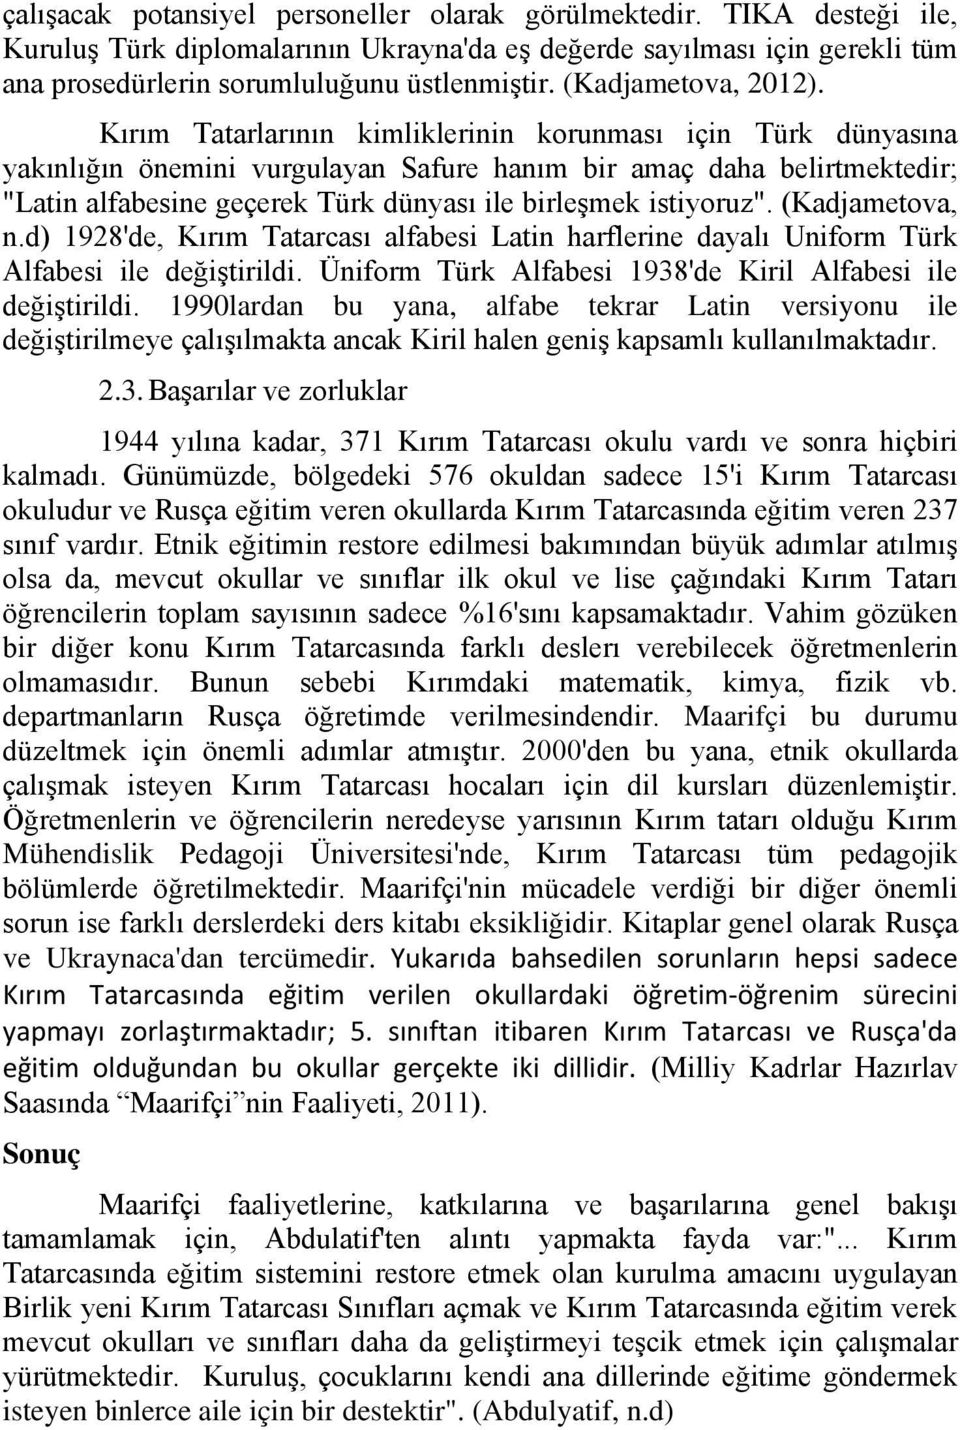 Kırım Tatarlarının kimliklerinin korunması için Türk dünyasına yakınlığın önemini vurgulayan Safure hanım bir amaç daha belirtmektedir; "Latin alfabesine geçerek Türk dünyası ile birleşmek istiyoruz".